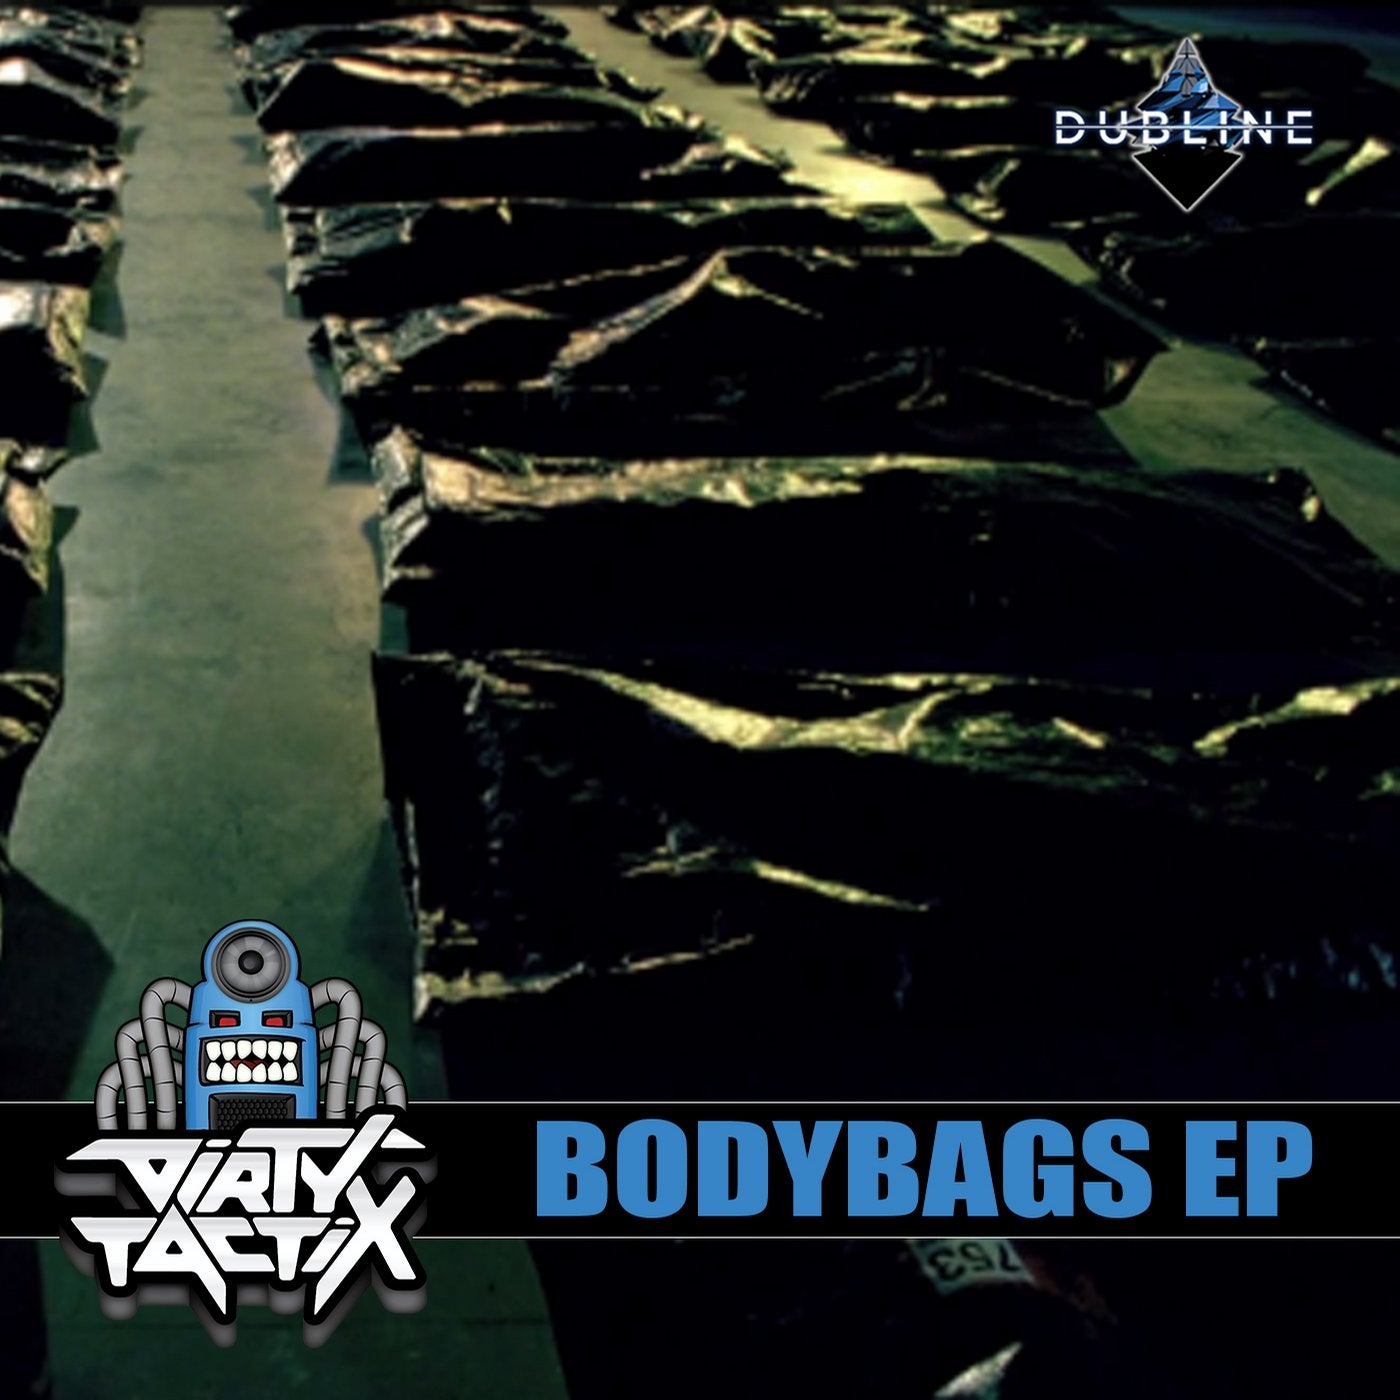 Bodybags EP